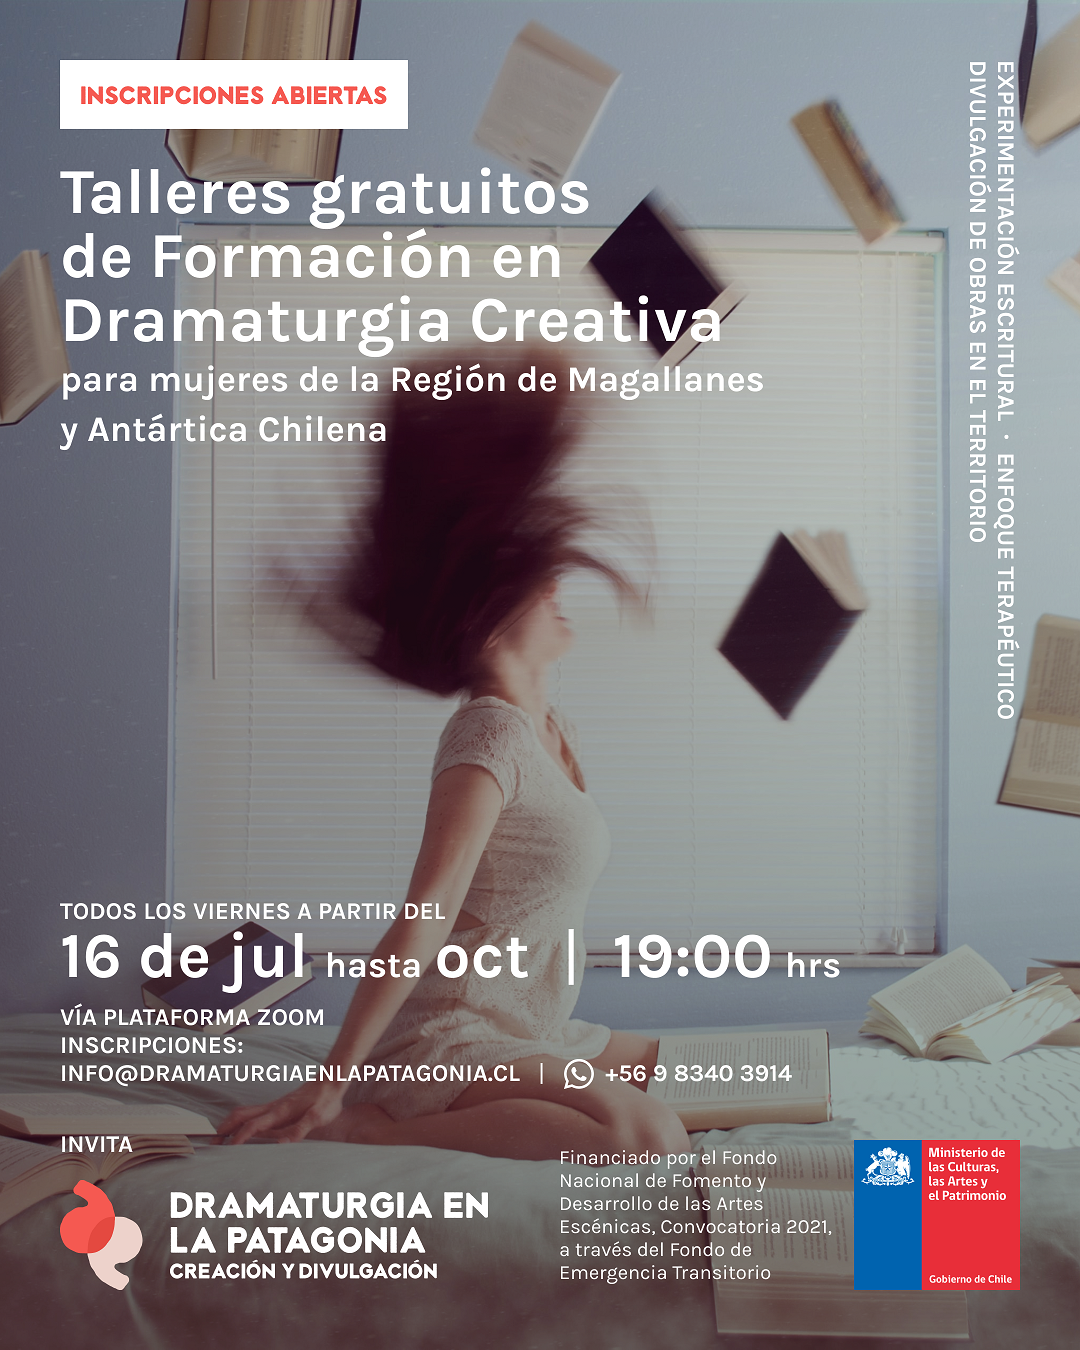 Se encuentran abiertas inscripciones para el Taller de Dramaturgia Creativa en la Patagonia, dirigido a mujeres